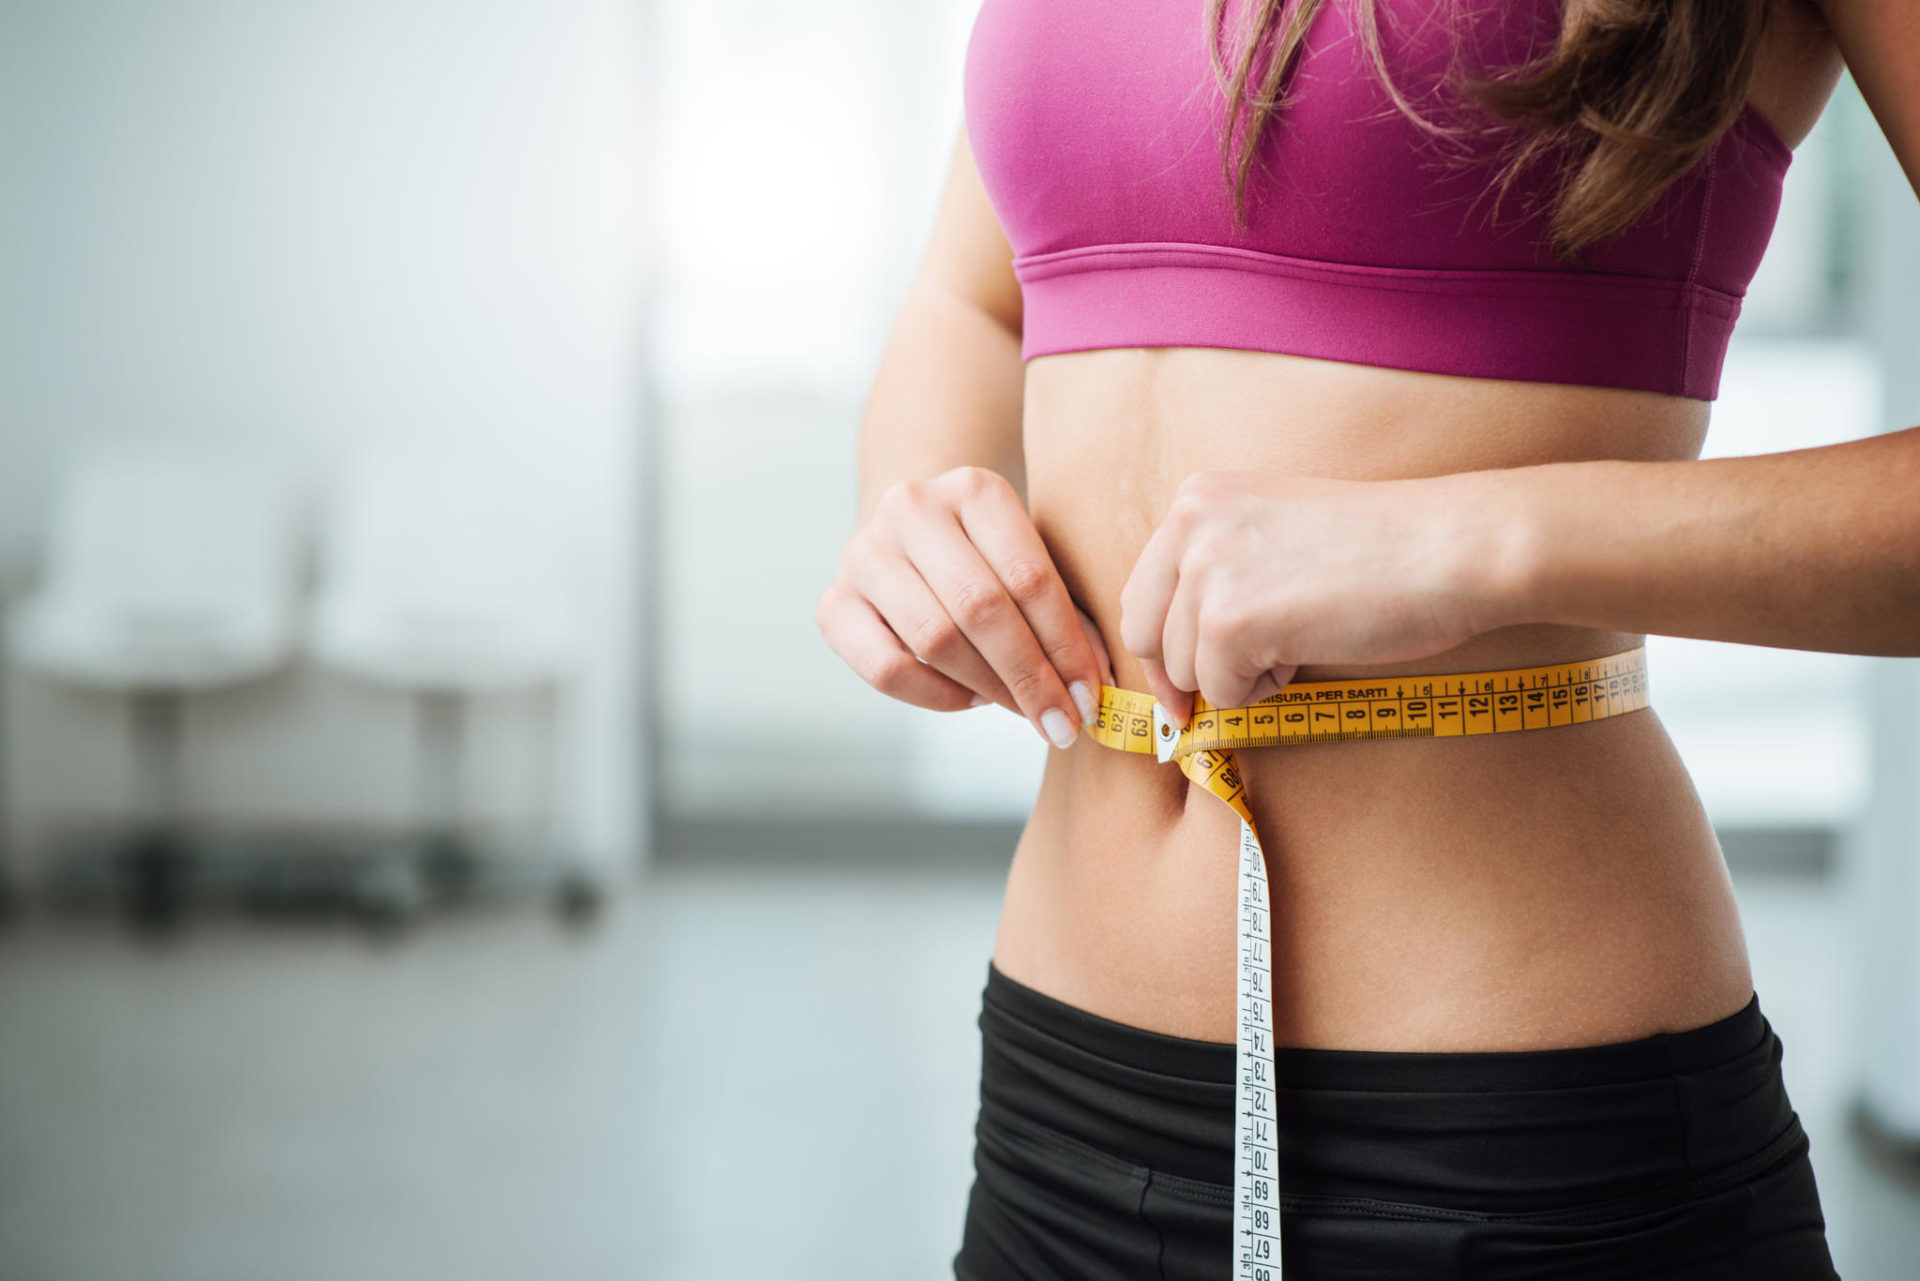 Dieta perder grasa y definir mujer gratis